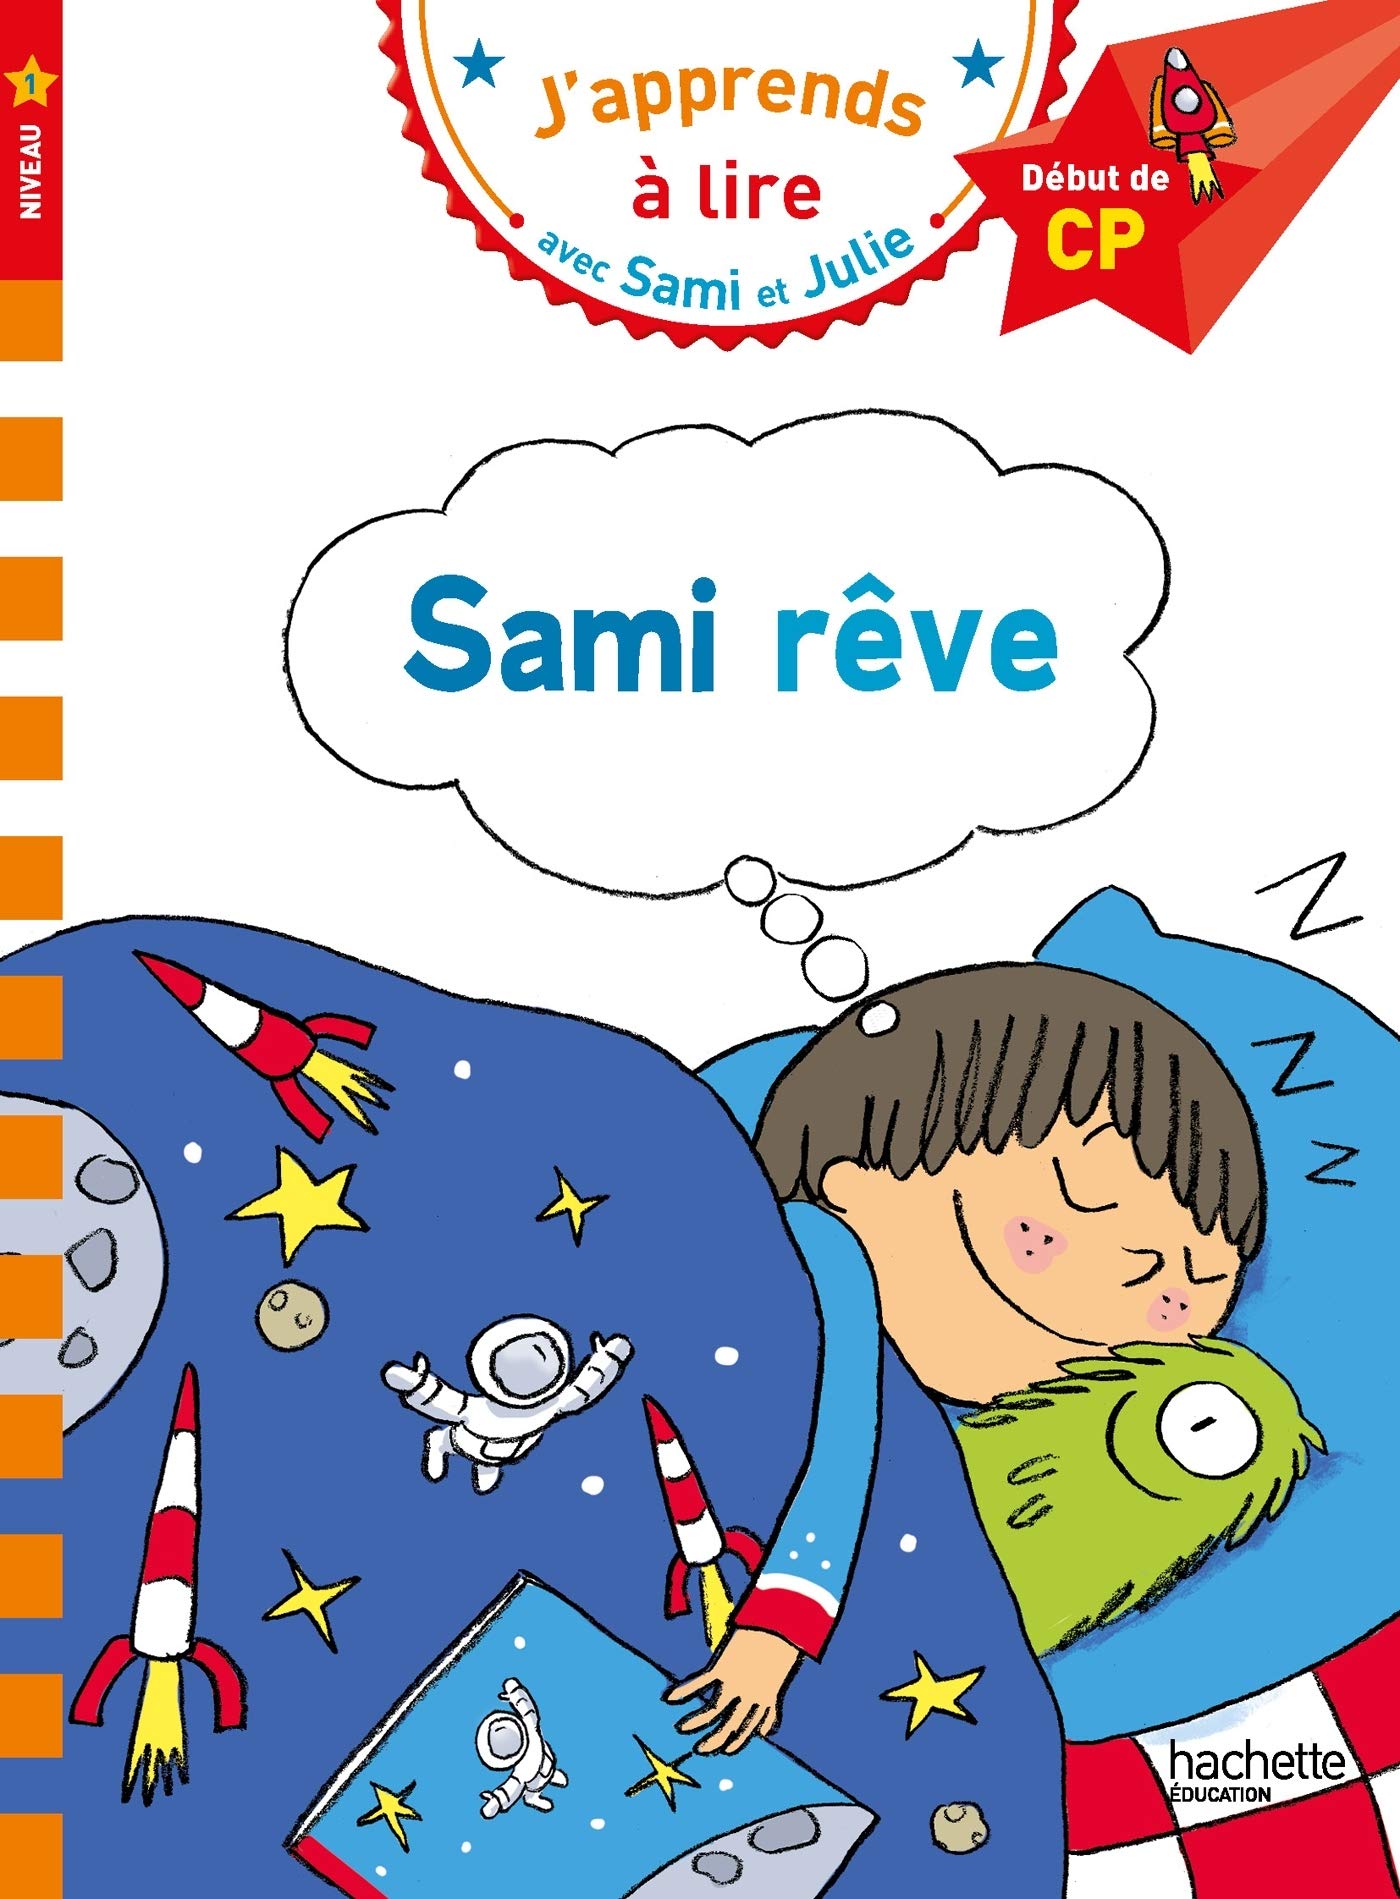 J'apprends a Lire Avec Sami et Julie 1: Sami Rêve Debut de cp